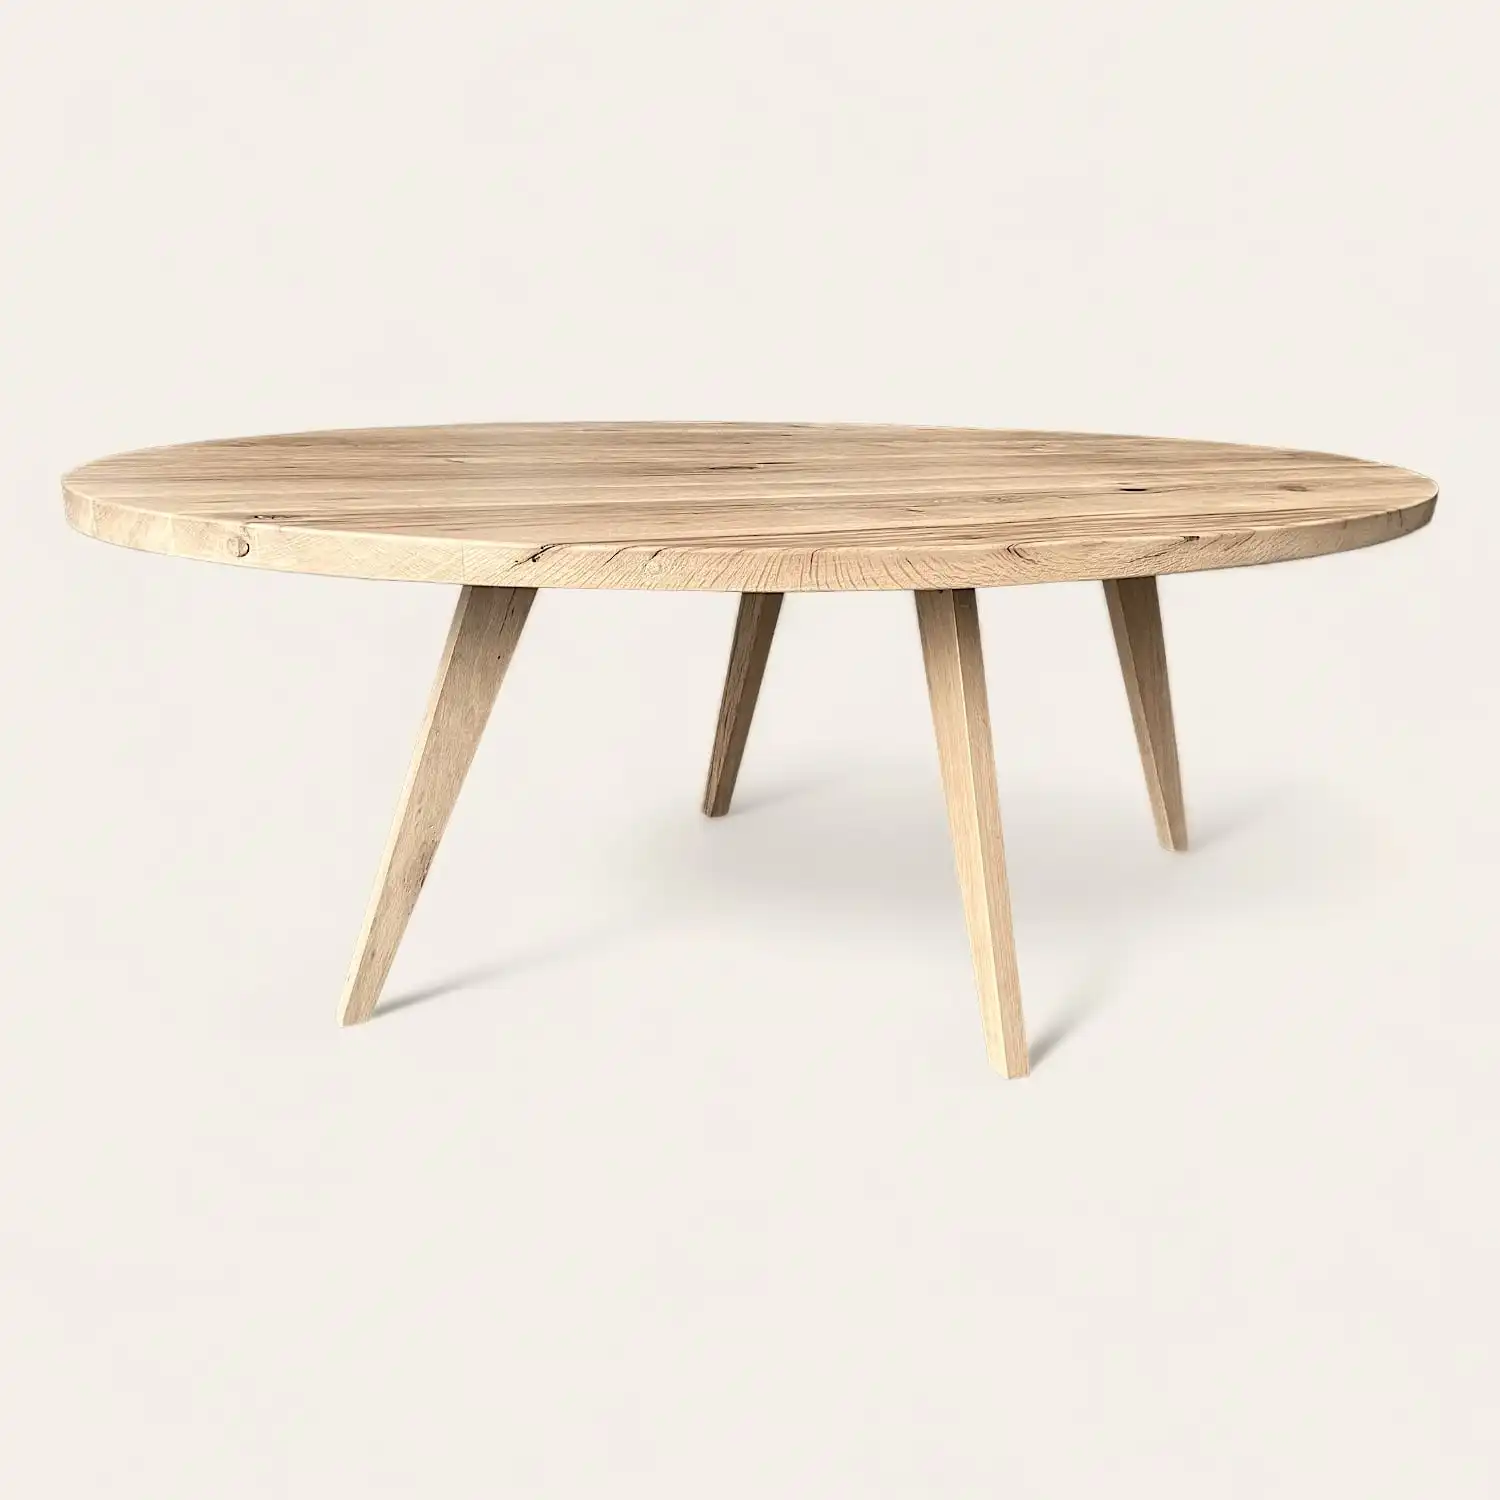  Une table rustique ronde en bois à trois pieds sur fond blanc. 